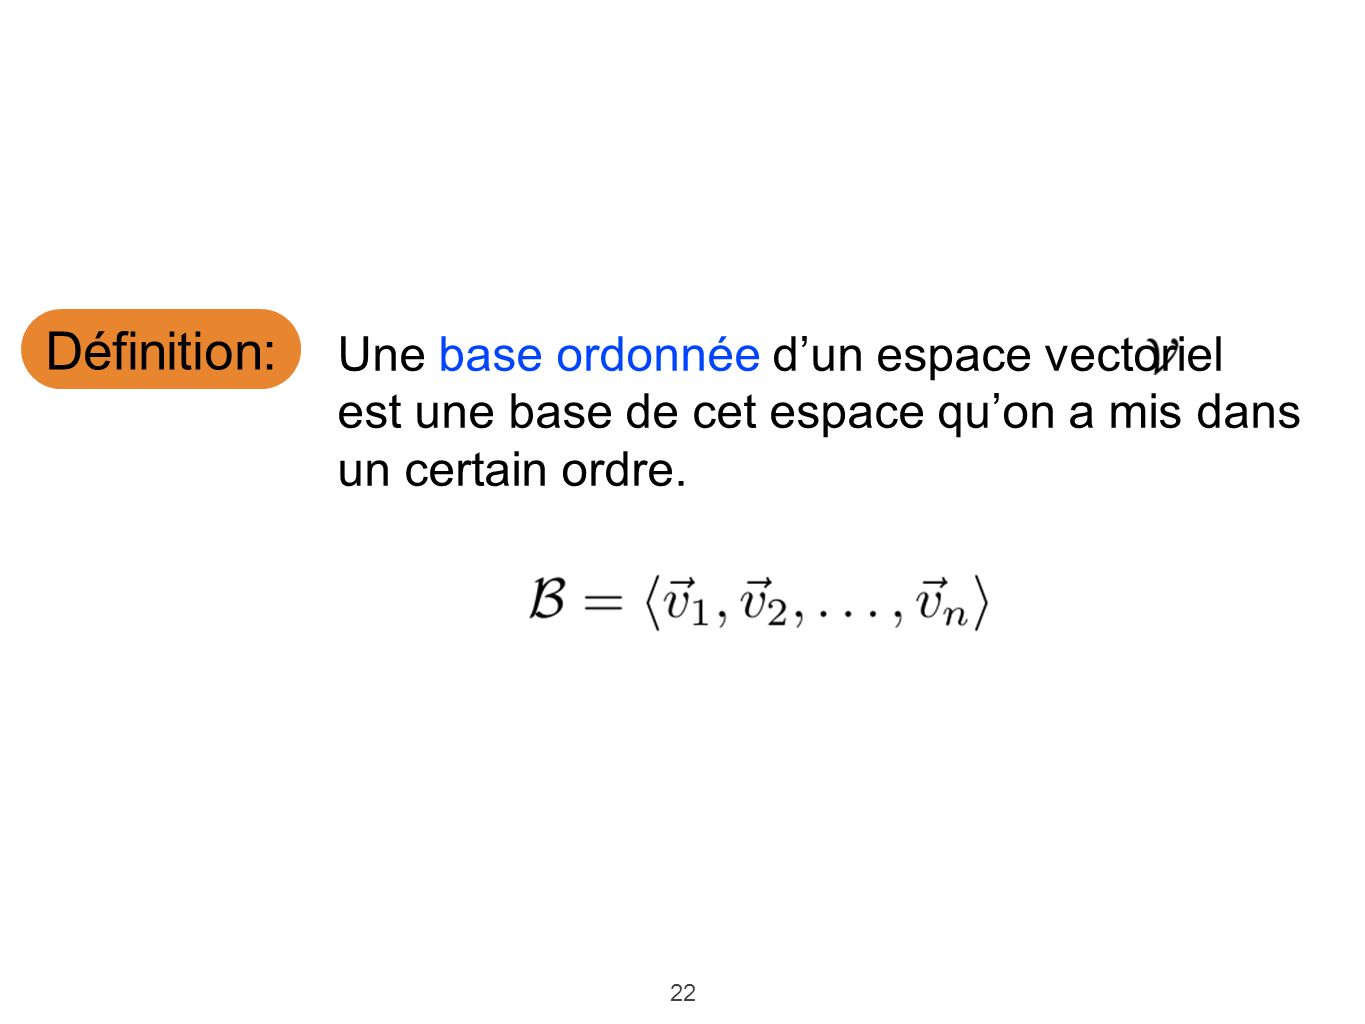 Définition: Une base ordonnée d’un espace vectoriel est une base de cet espace qu’on a mis dans un certain ordre.